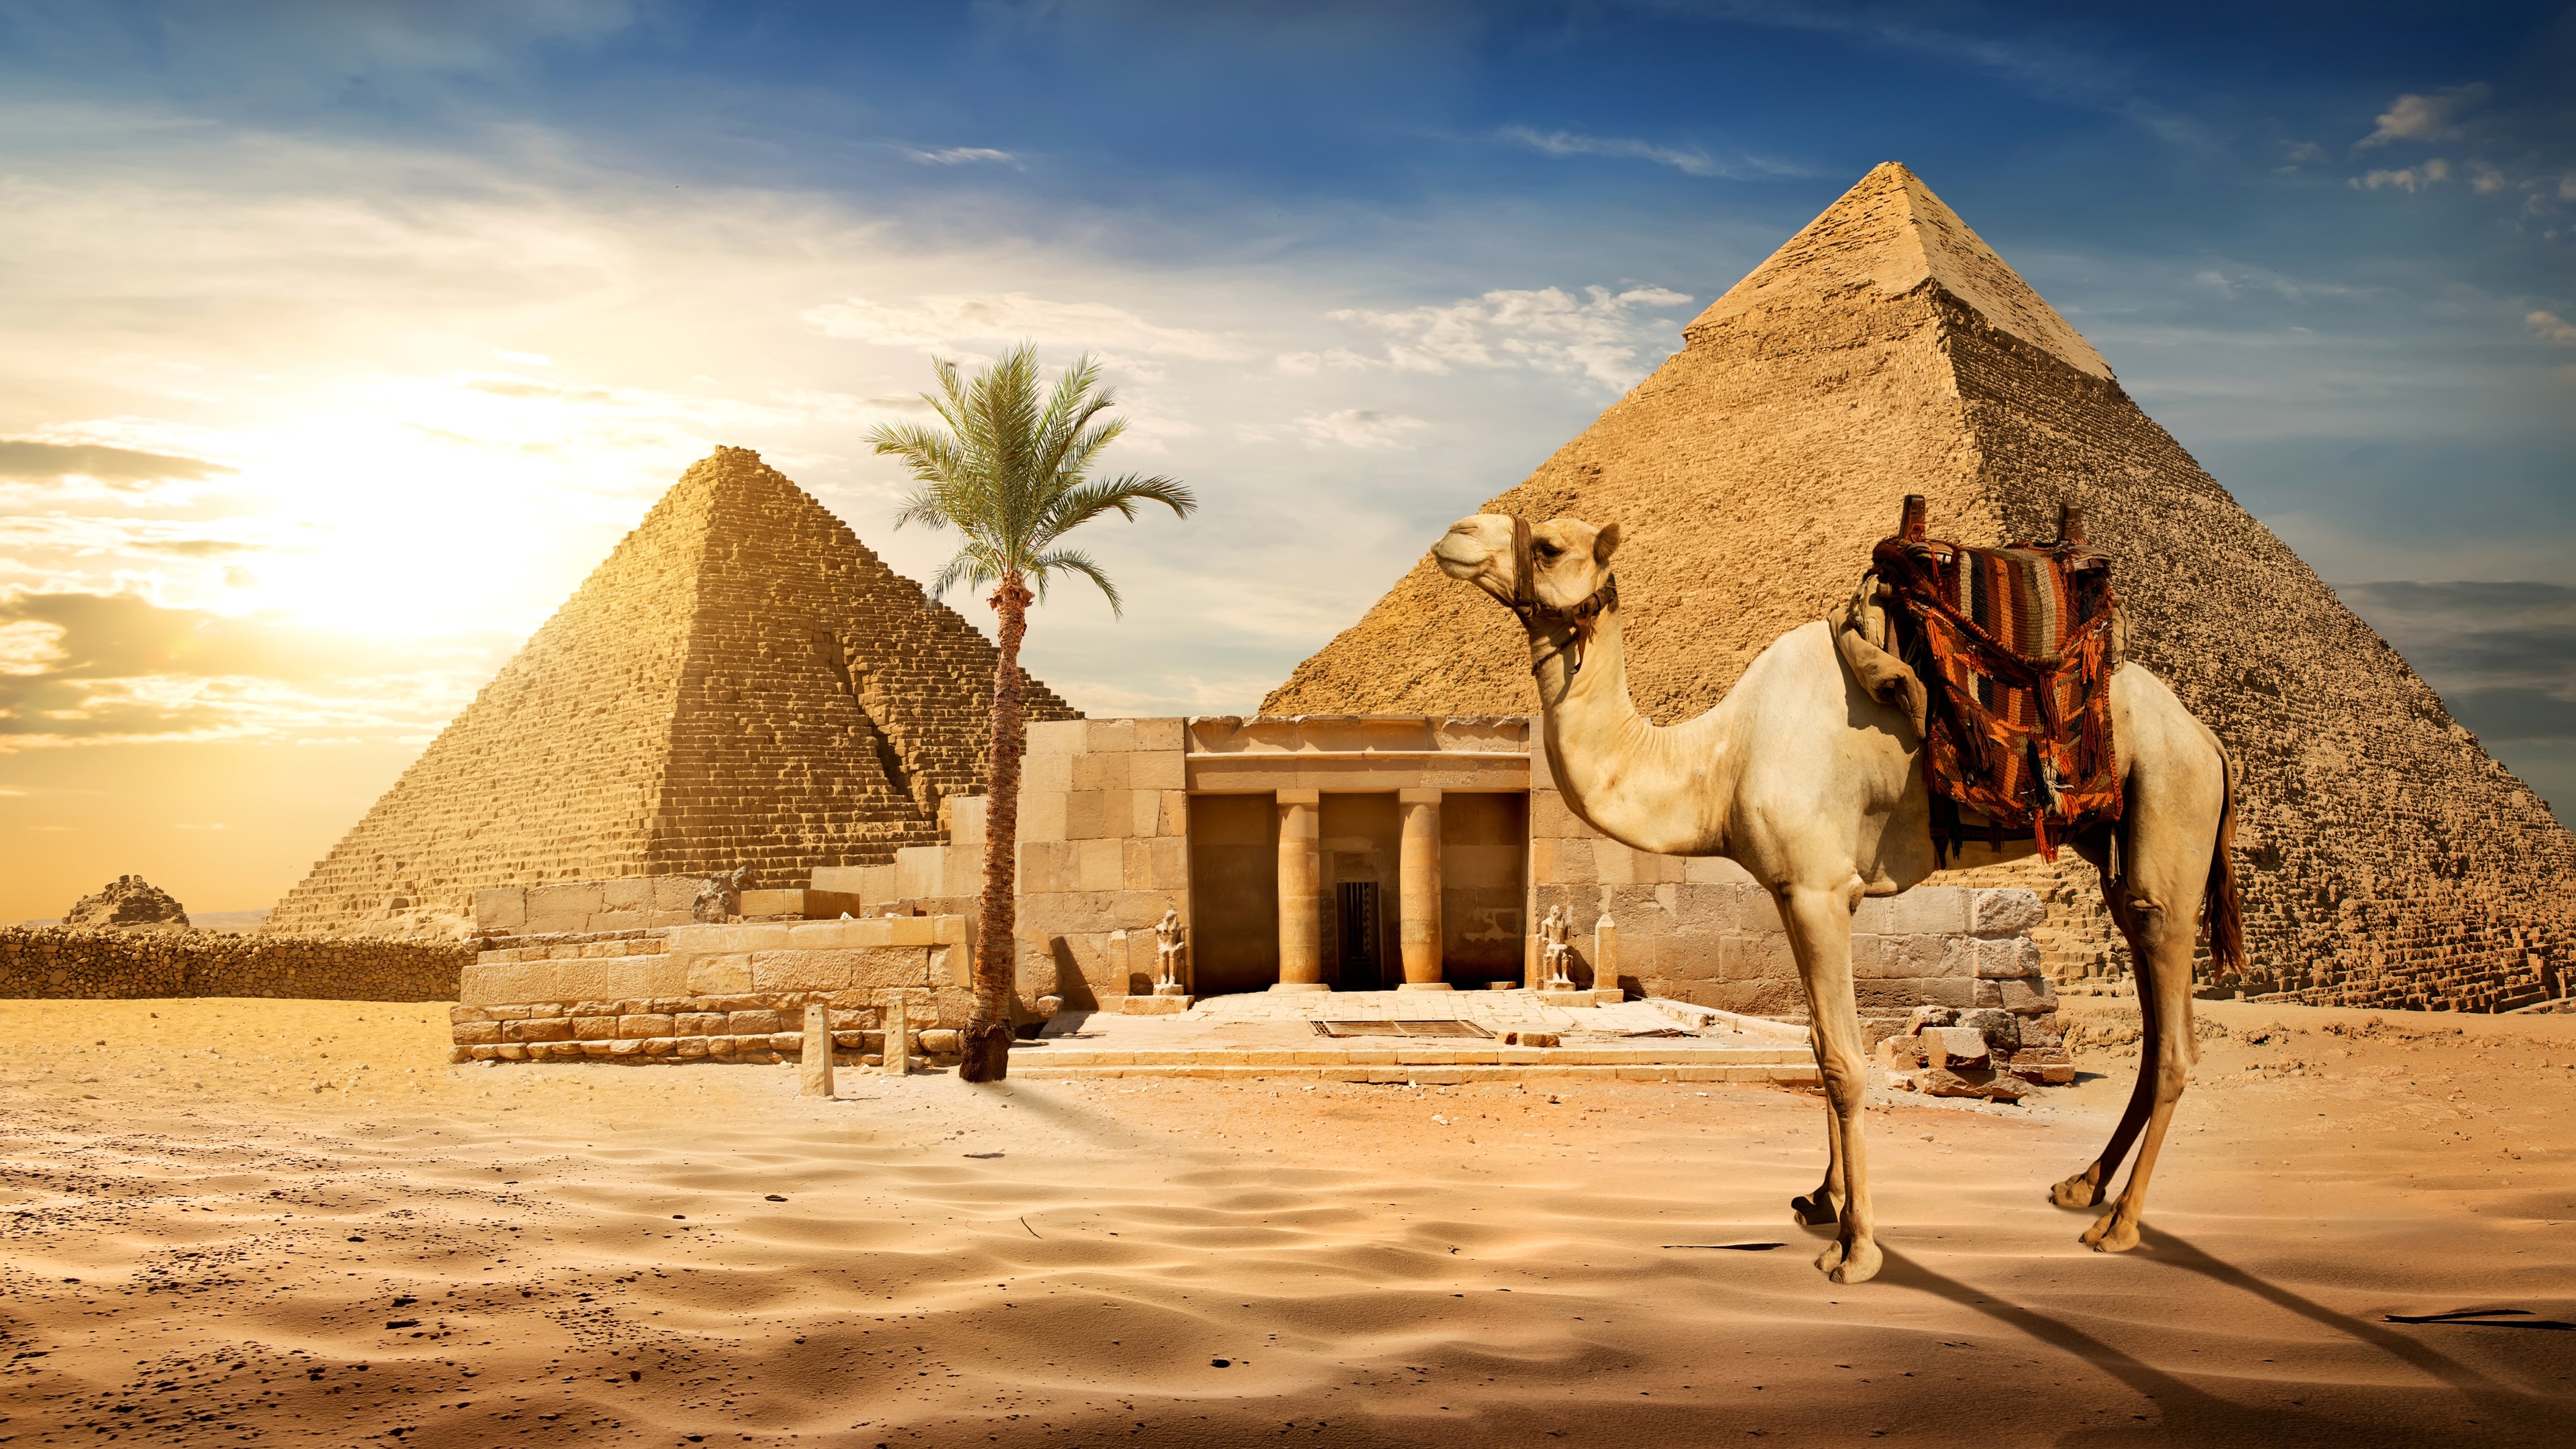 Wallpaper Cairo, Pyramid, Camel, Sands, Palm Tree, - Fond D Écran Egypte - HD Wallpaper 